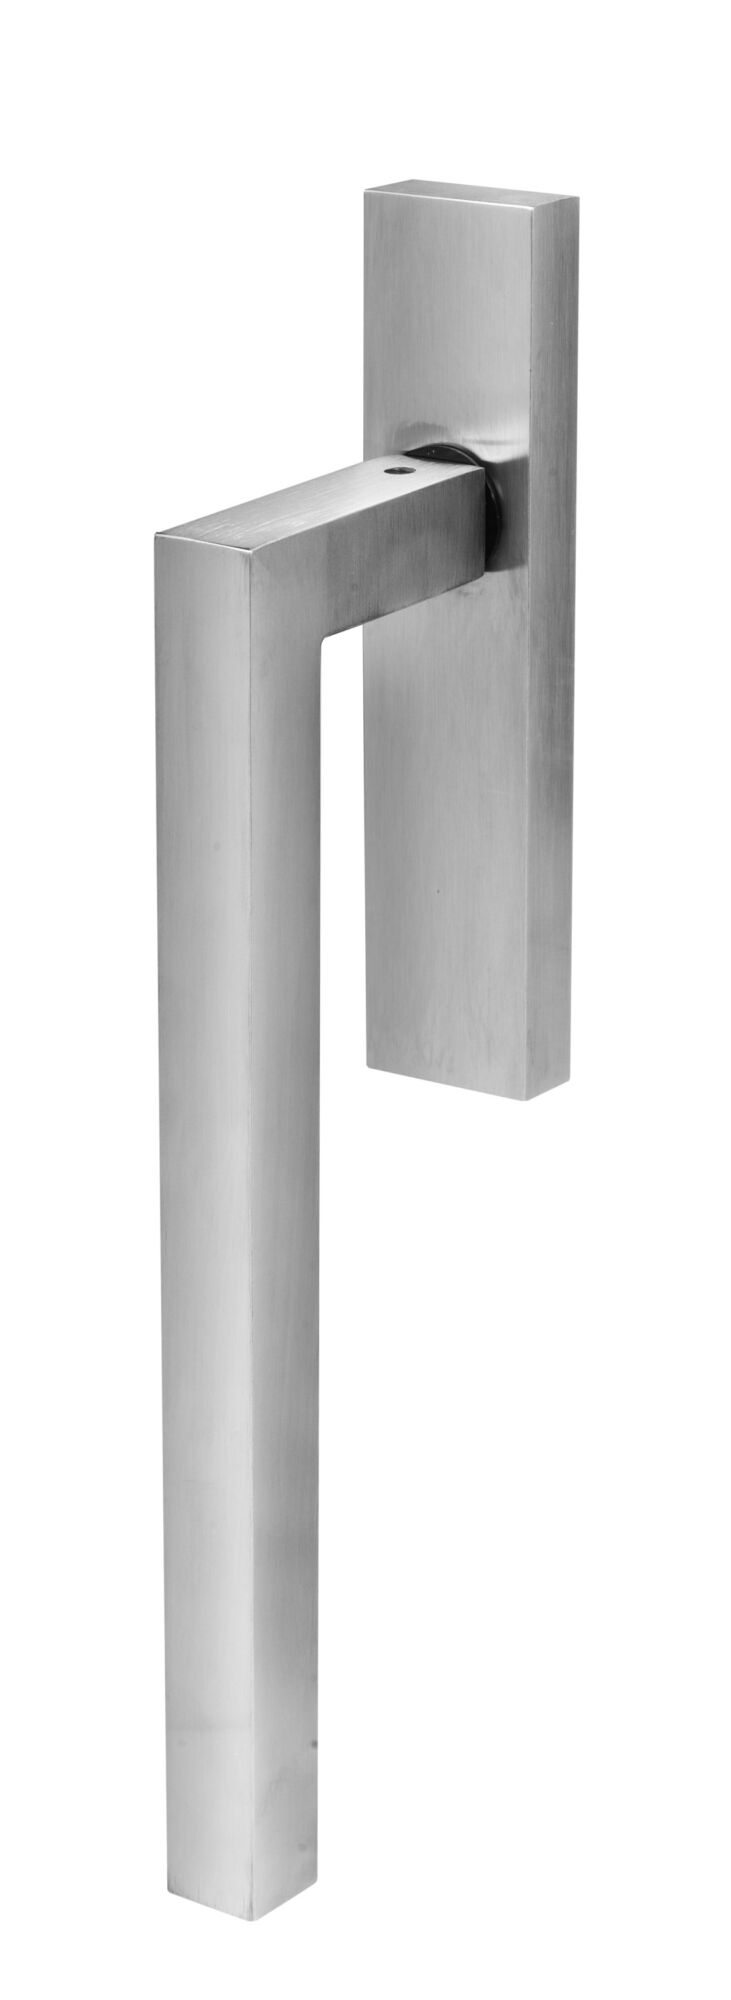 flush door handles: square lift slide door handle